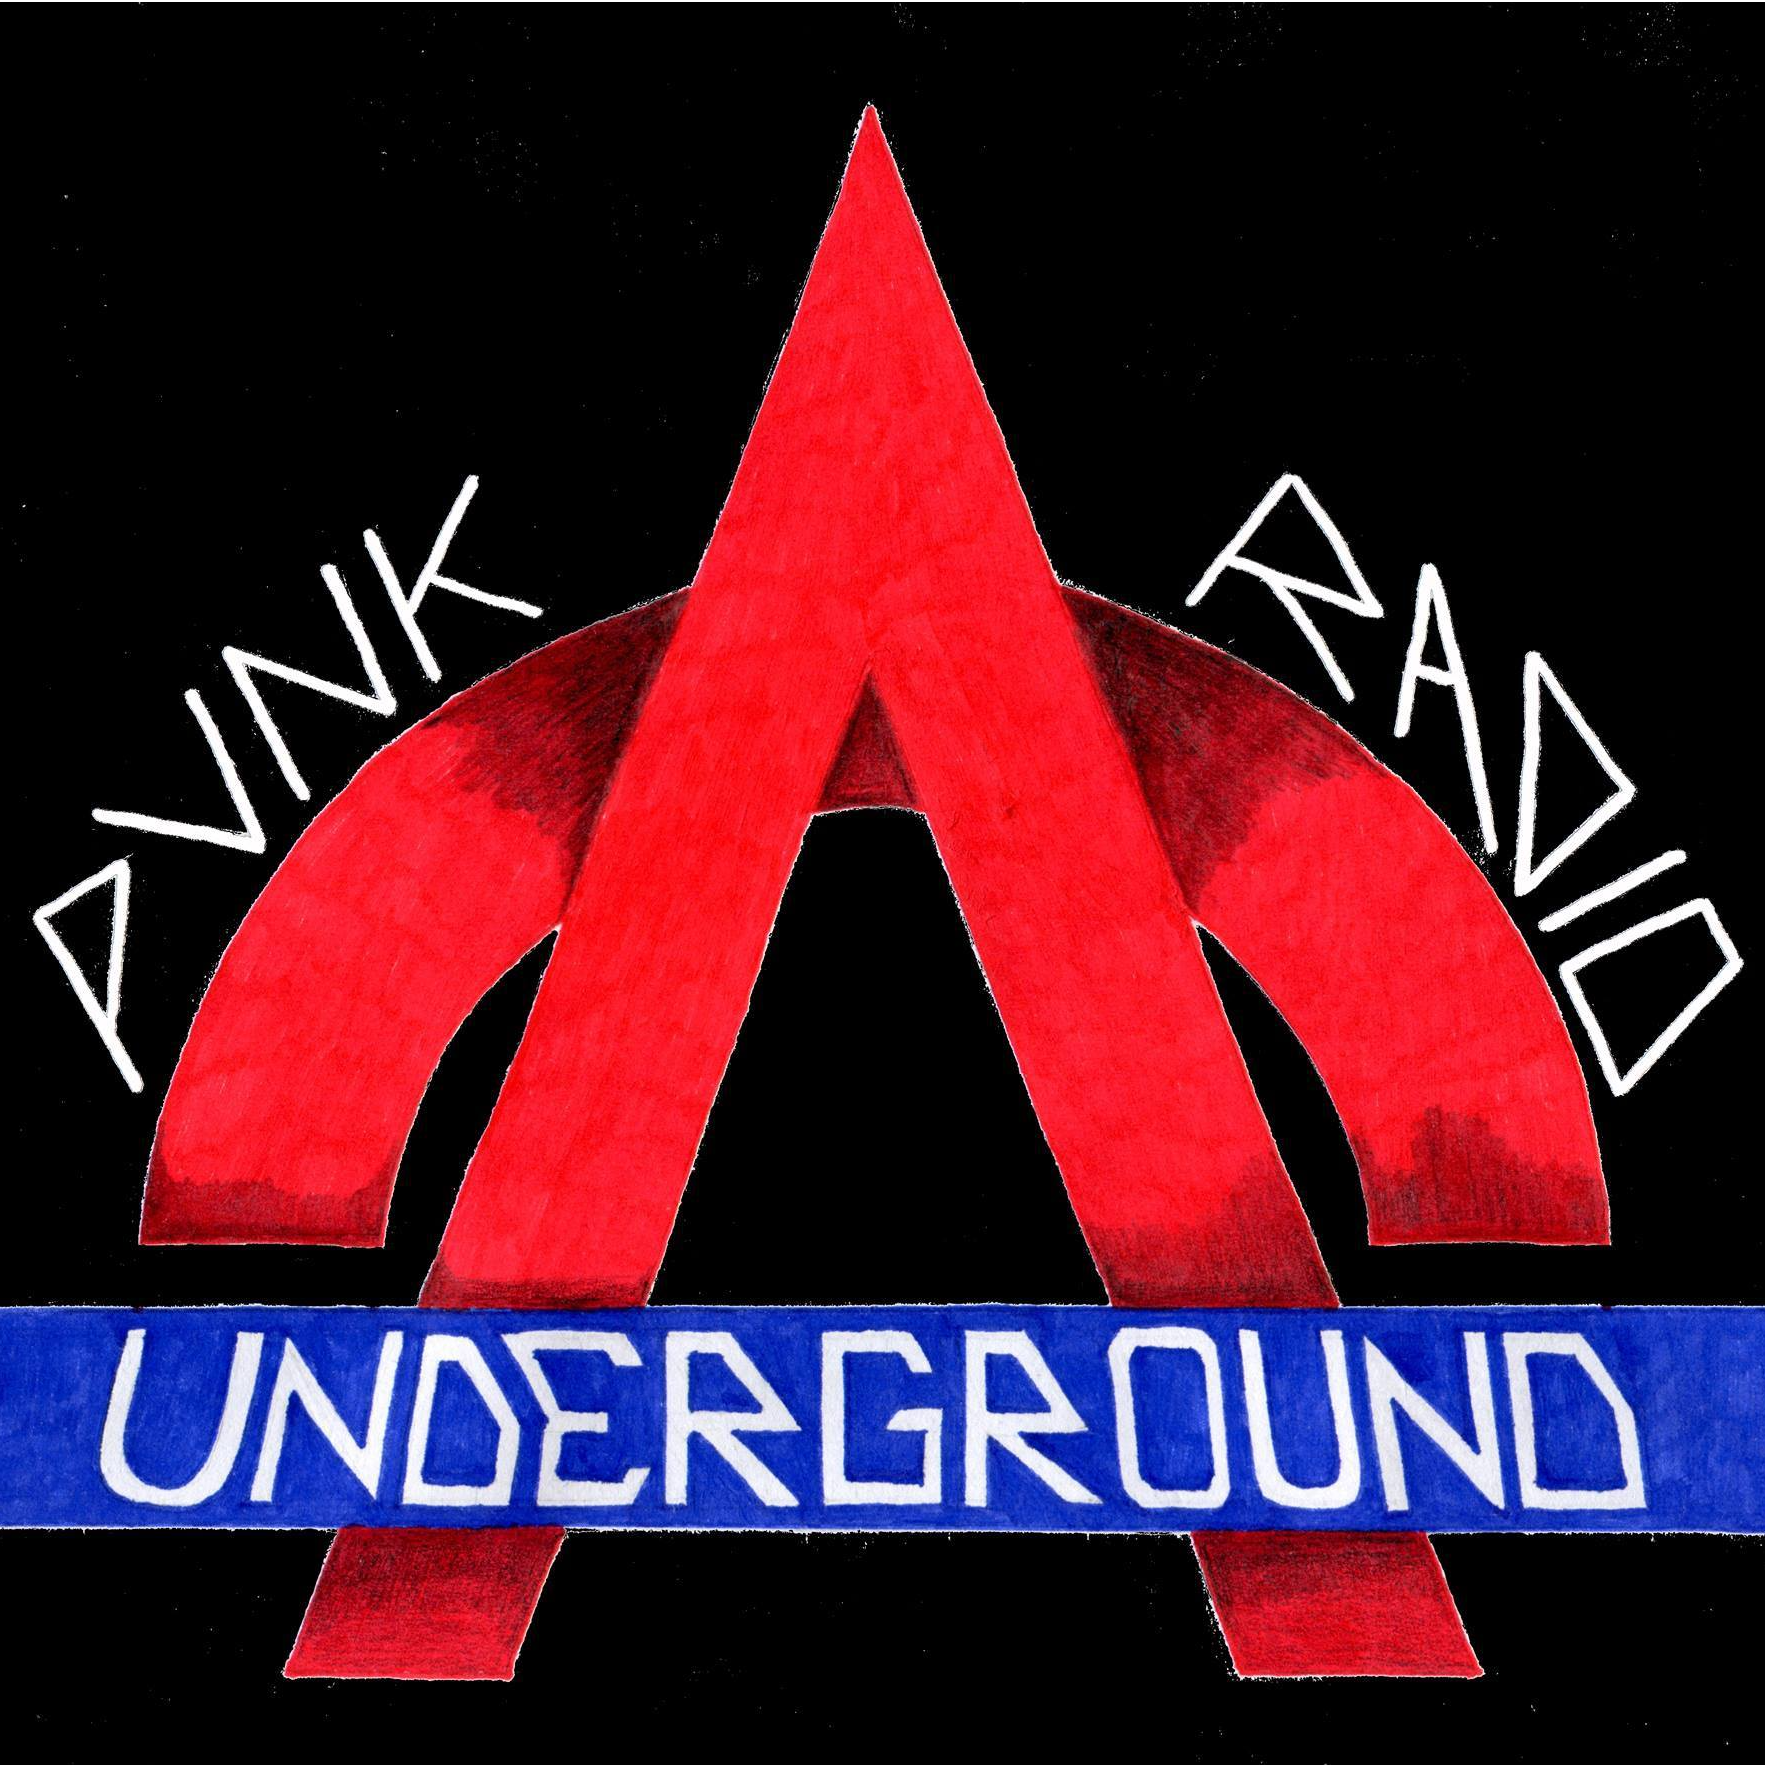 Punk Radio Underground